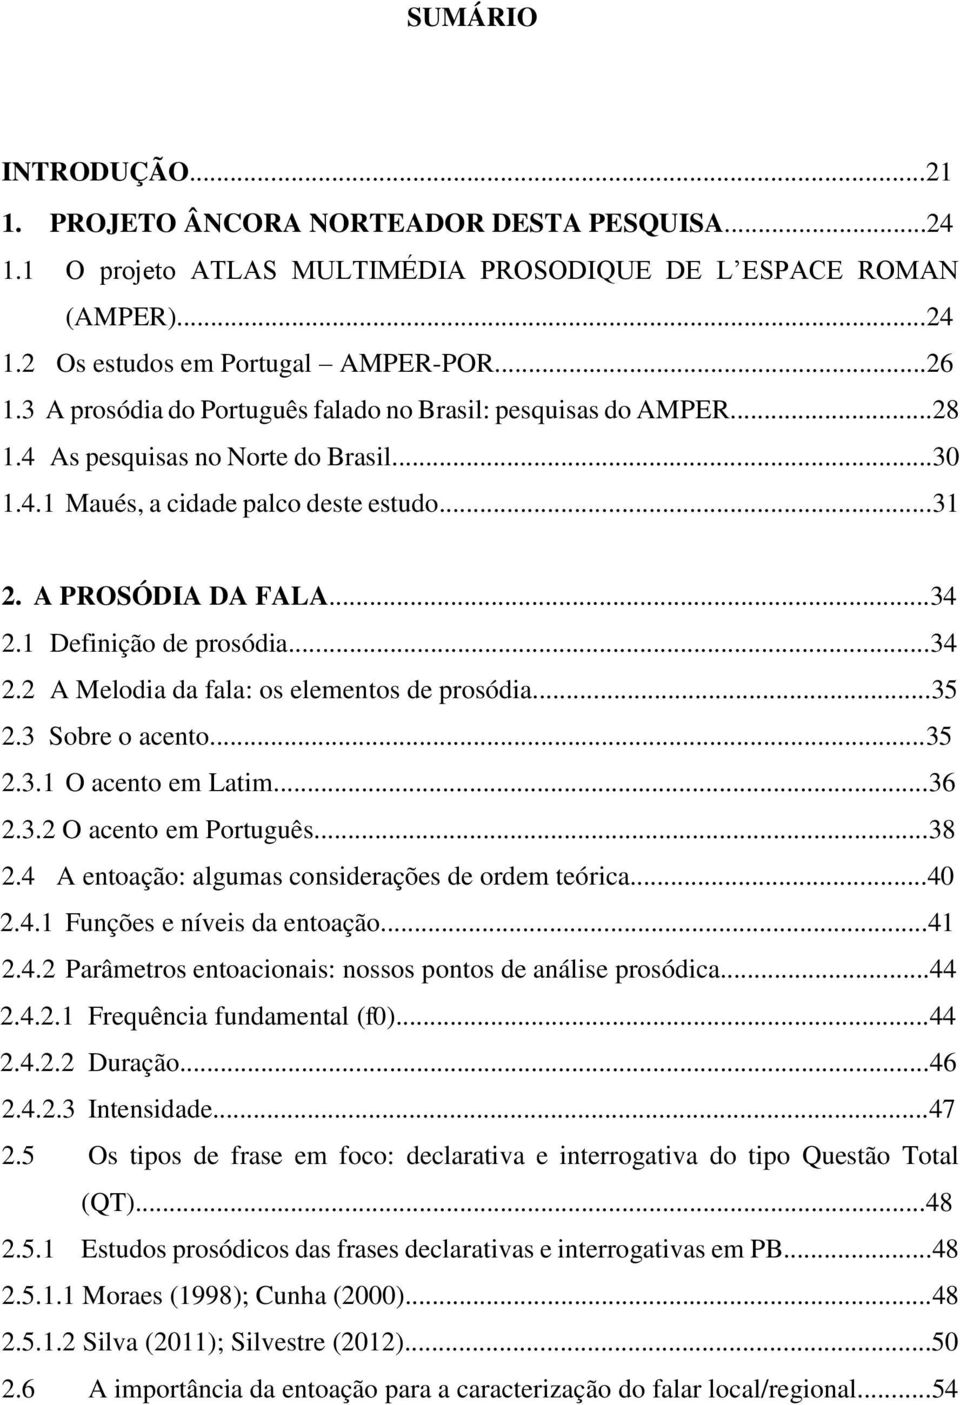 1 Definição de prosódia...34 2.2 A Melodia da fala: os elementos de prosódia...35 2.3 Sobre o acento...35 2.3.1 O acento em Latim...36 2.3.2 O acento em Português...38 2.